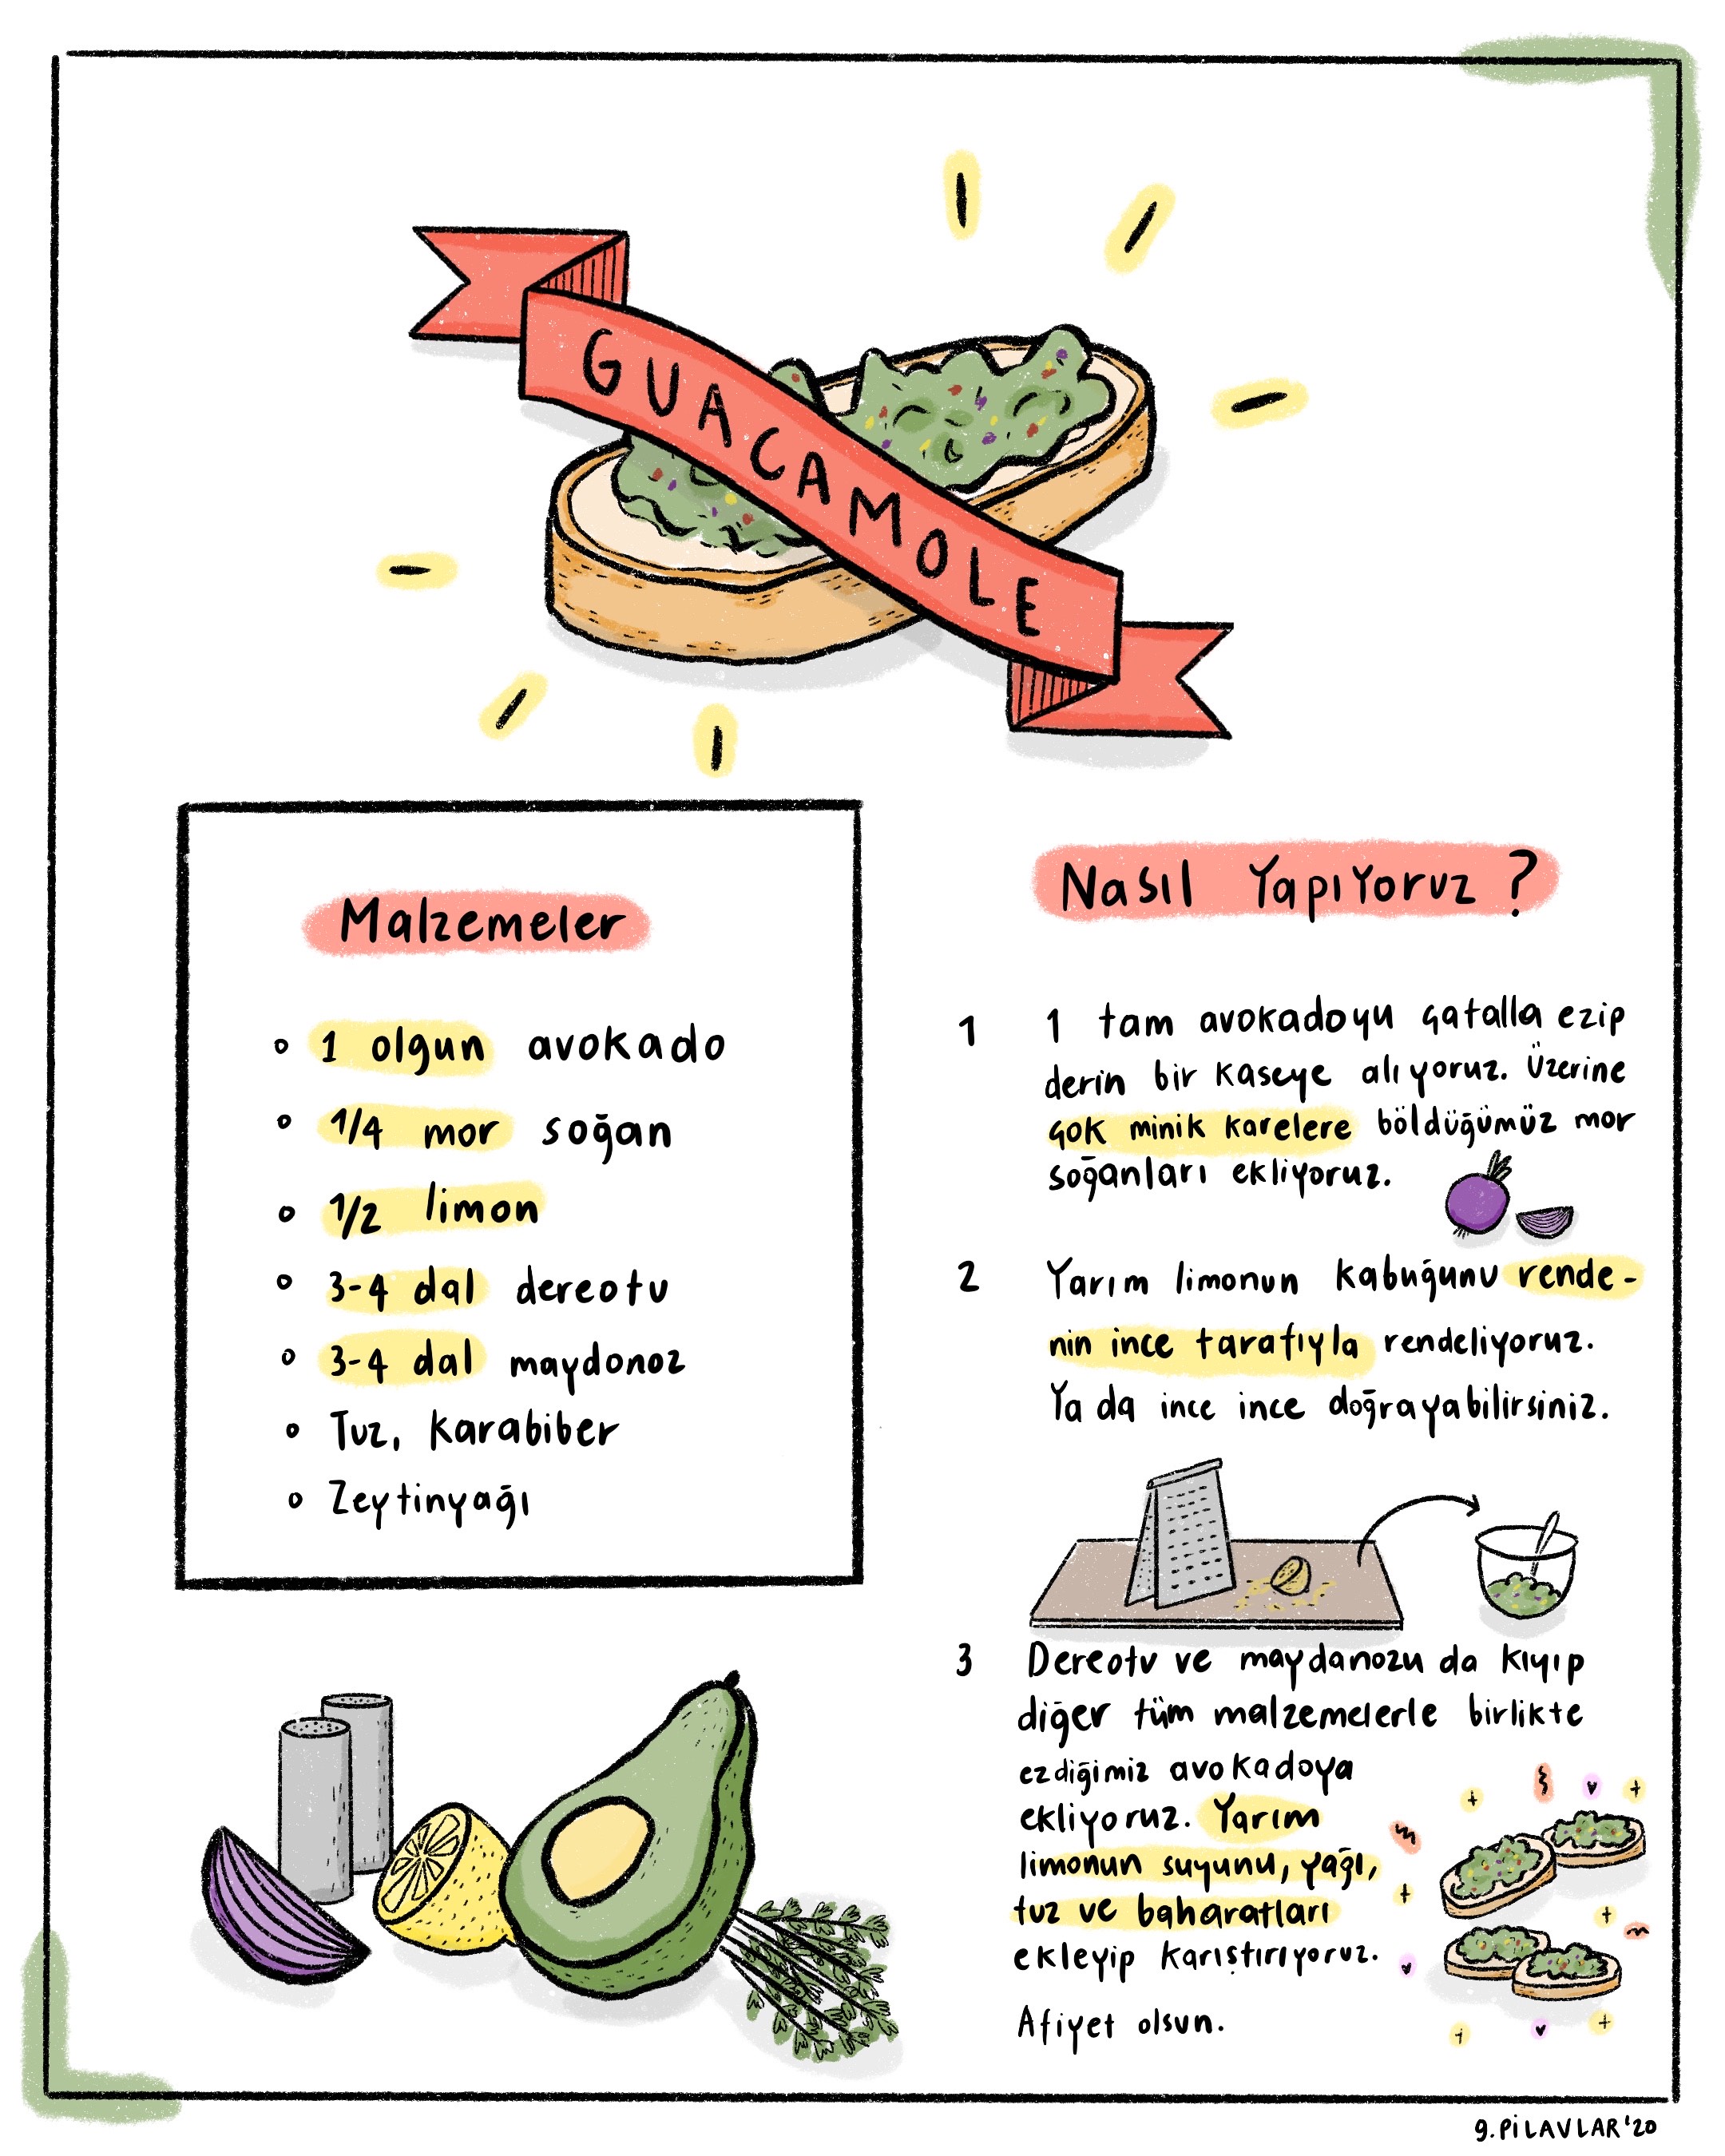 cizgili-tarifler-guacamole-1